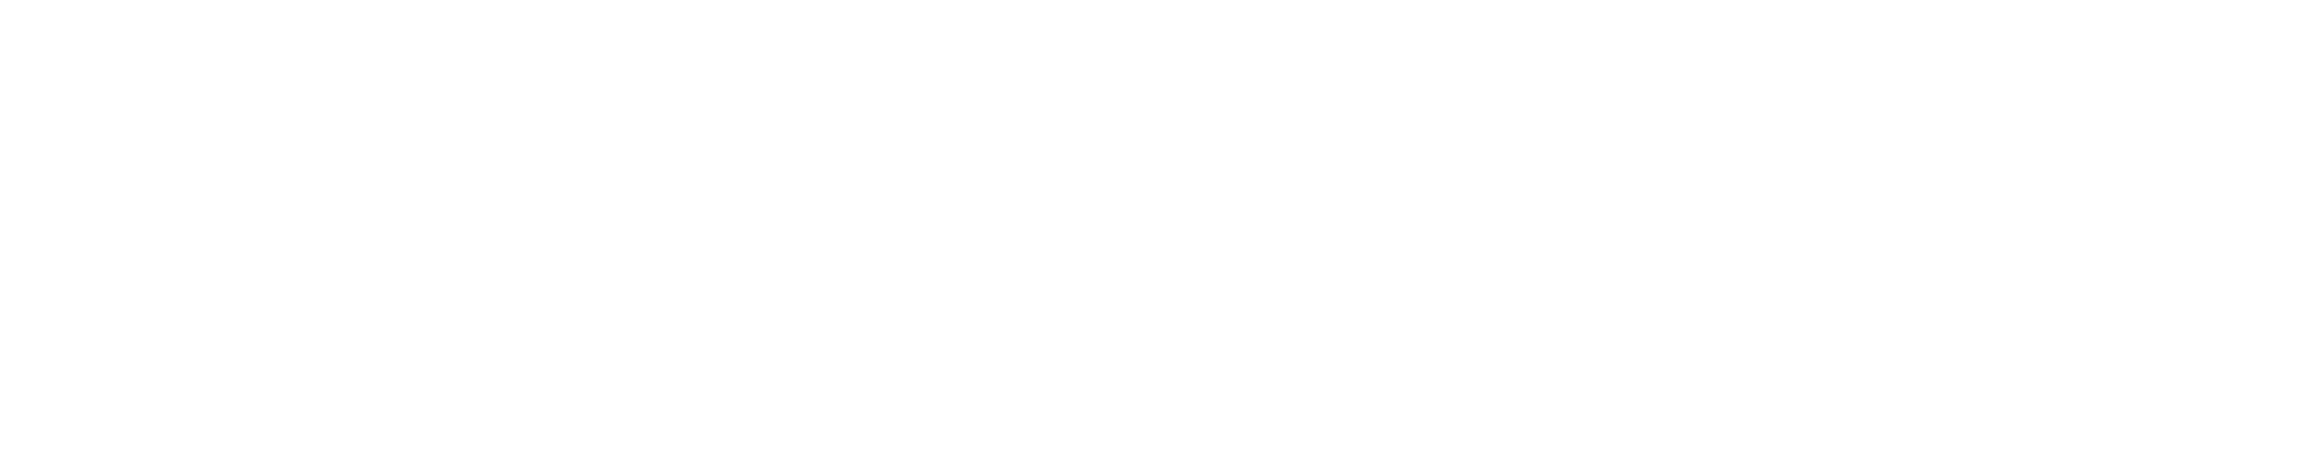 PlayPlay logo 2022 white